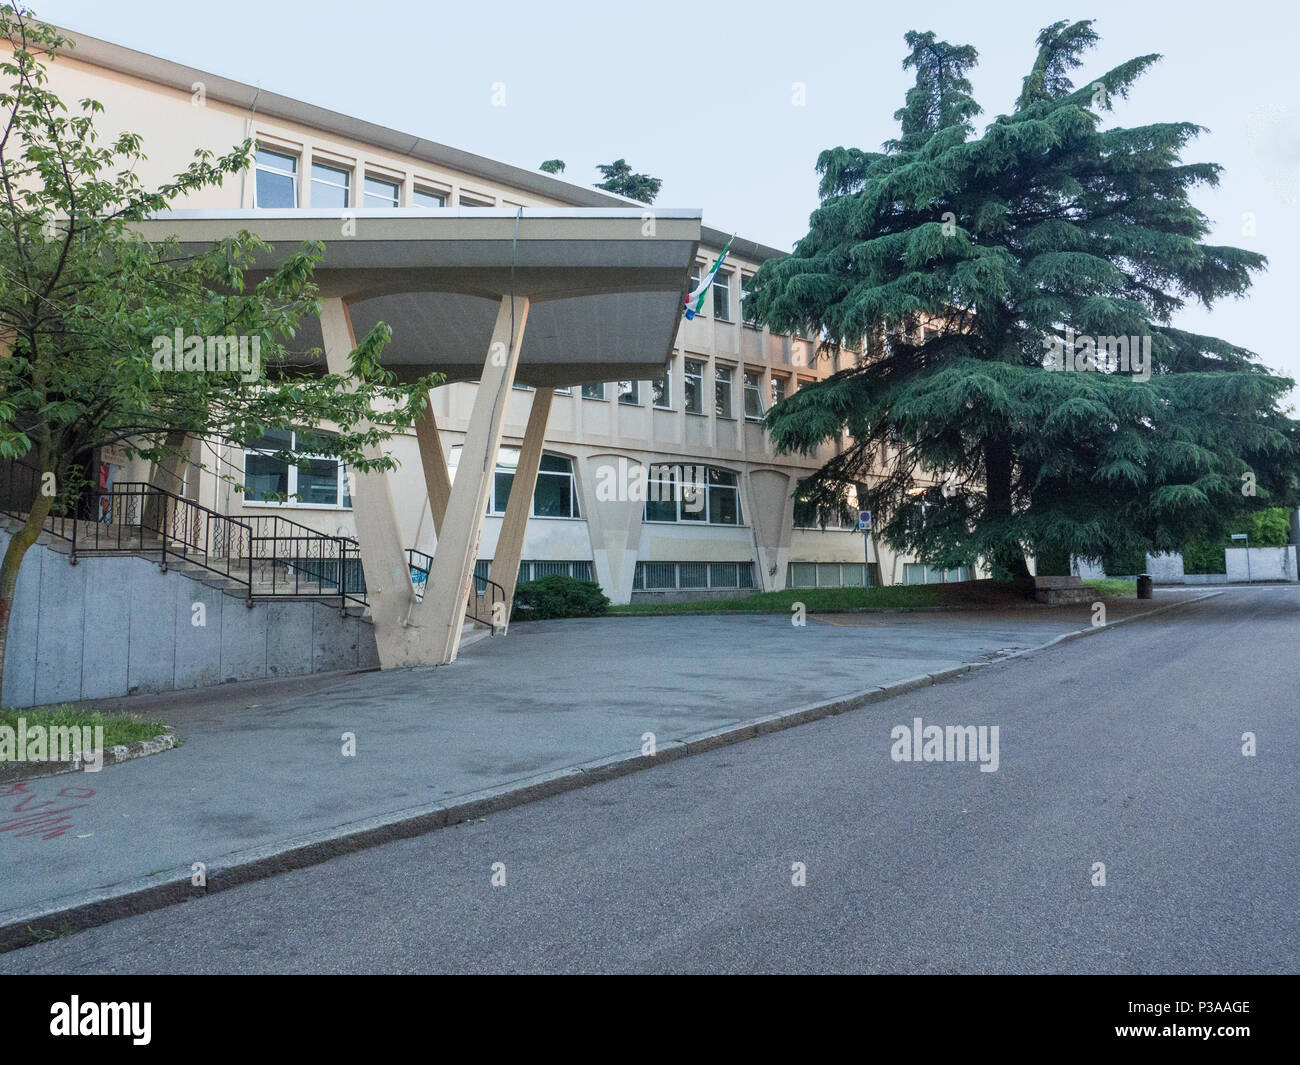 Entrée d'une école intermédiaire construit dans les années 60, Italie Banque D'Images